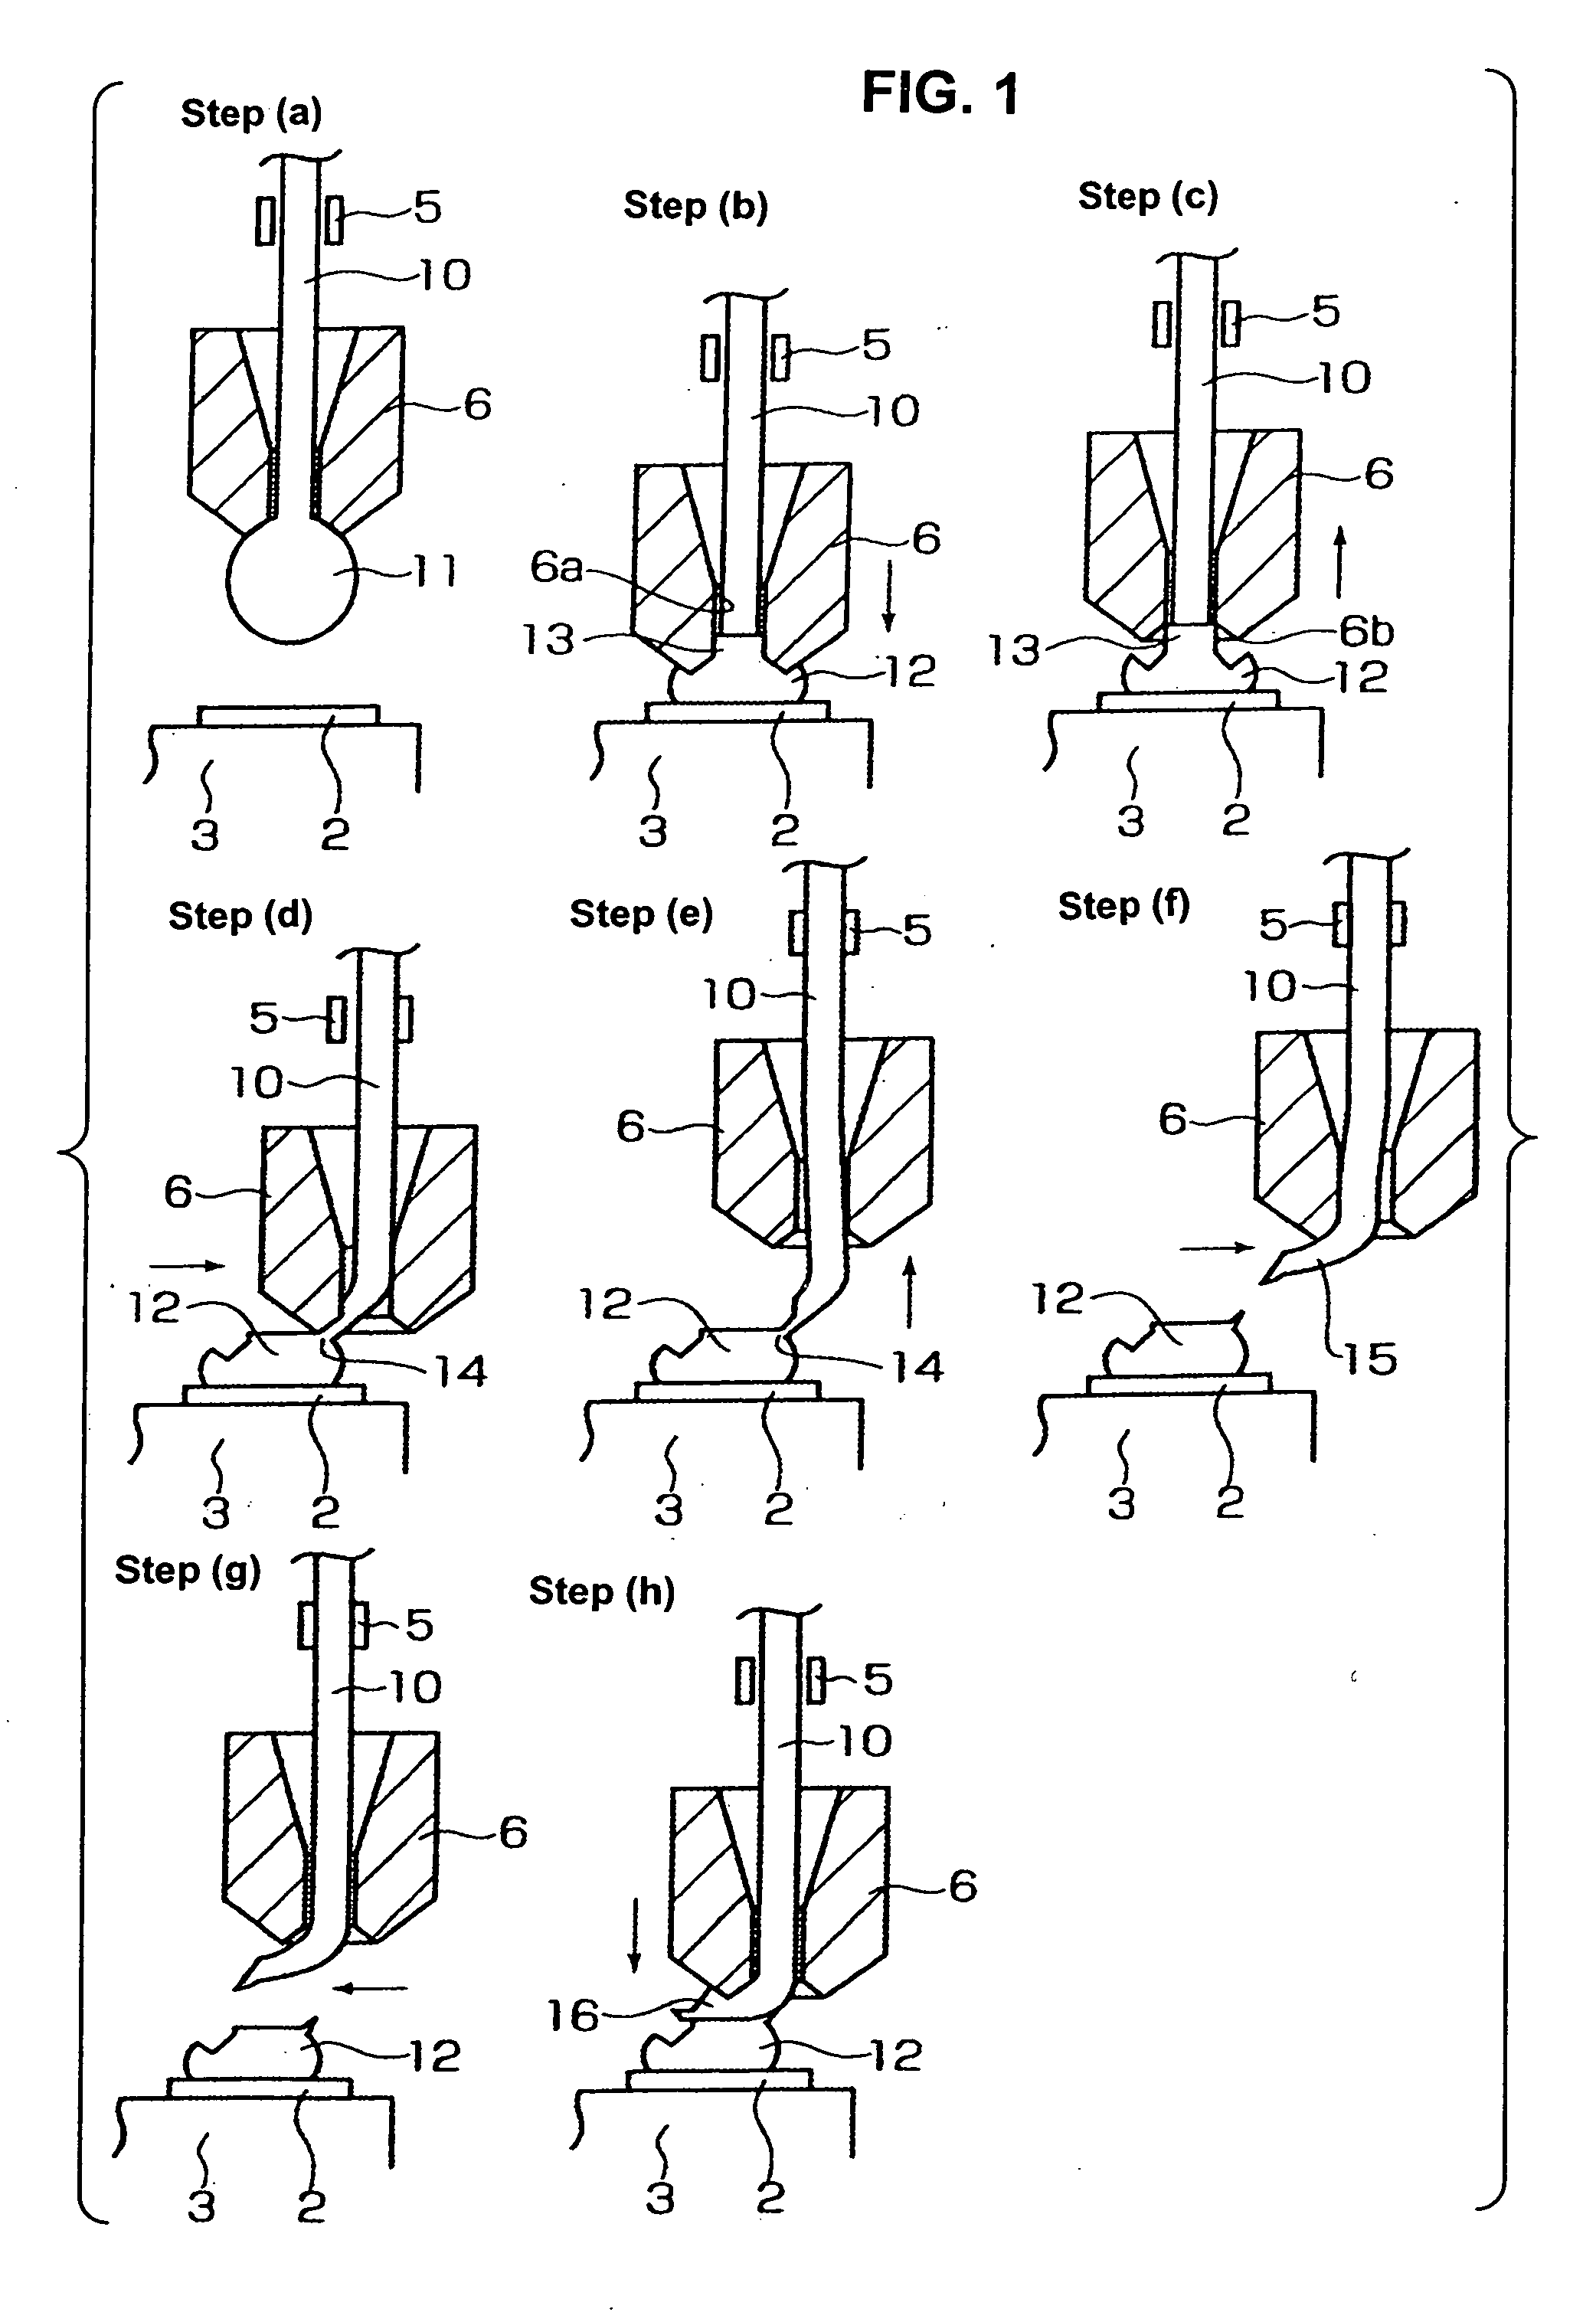 Wire bonding method